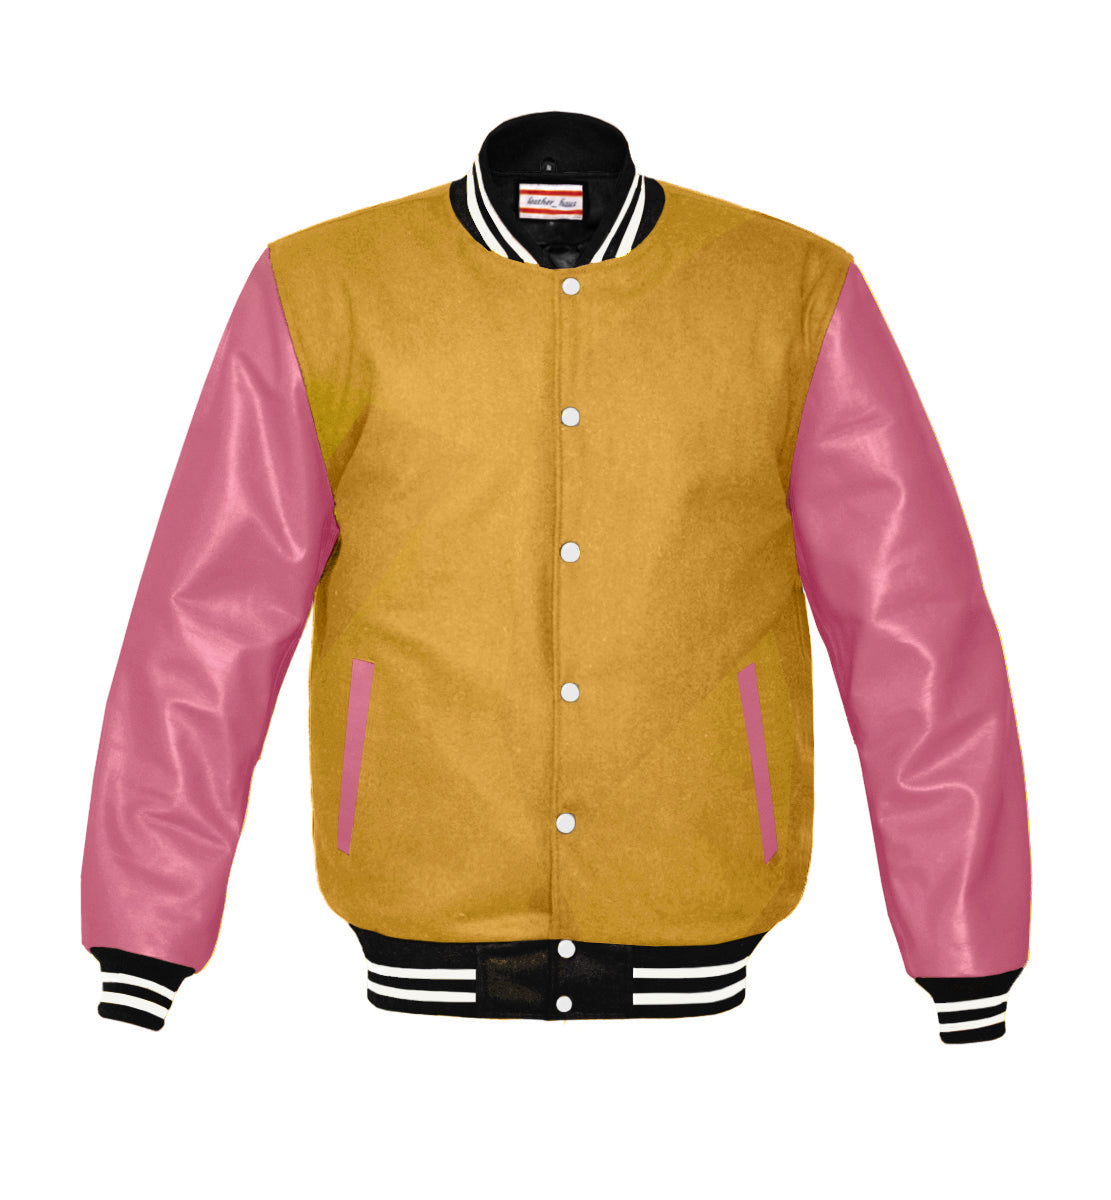 Vandy the Pink Varsity Letterman Jacket, worn once, XL